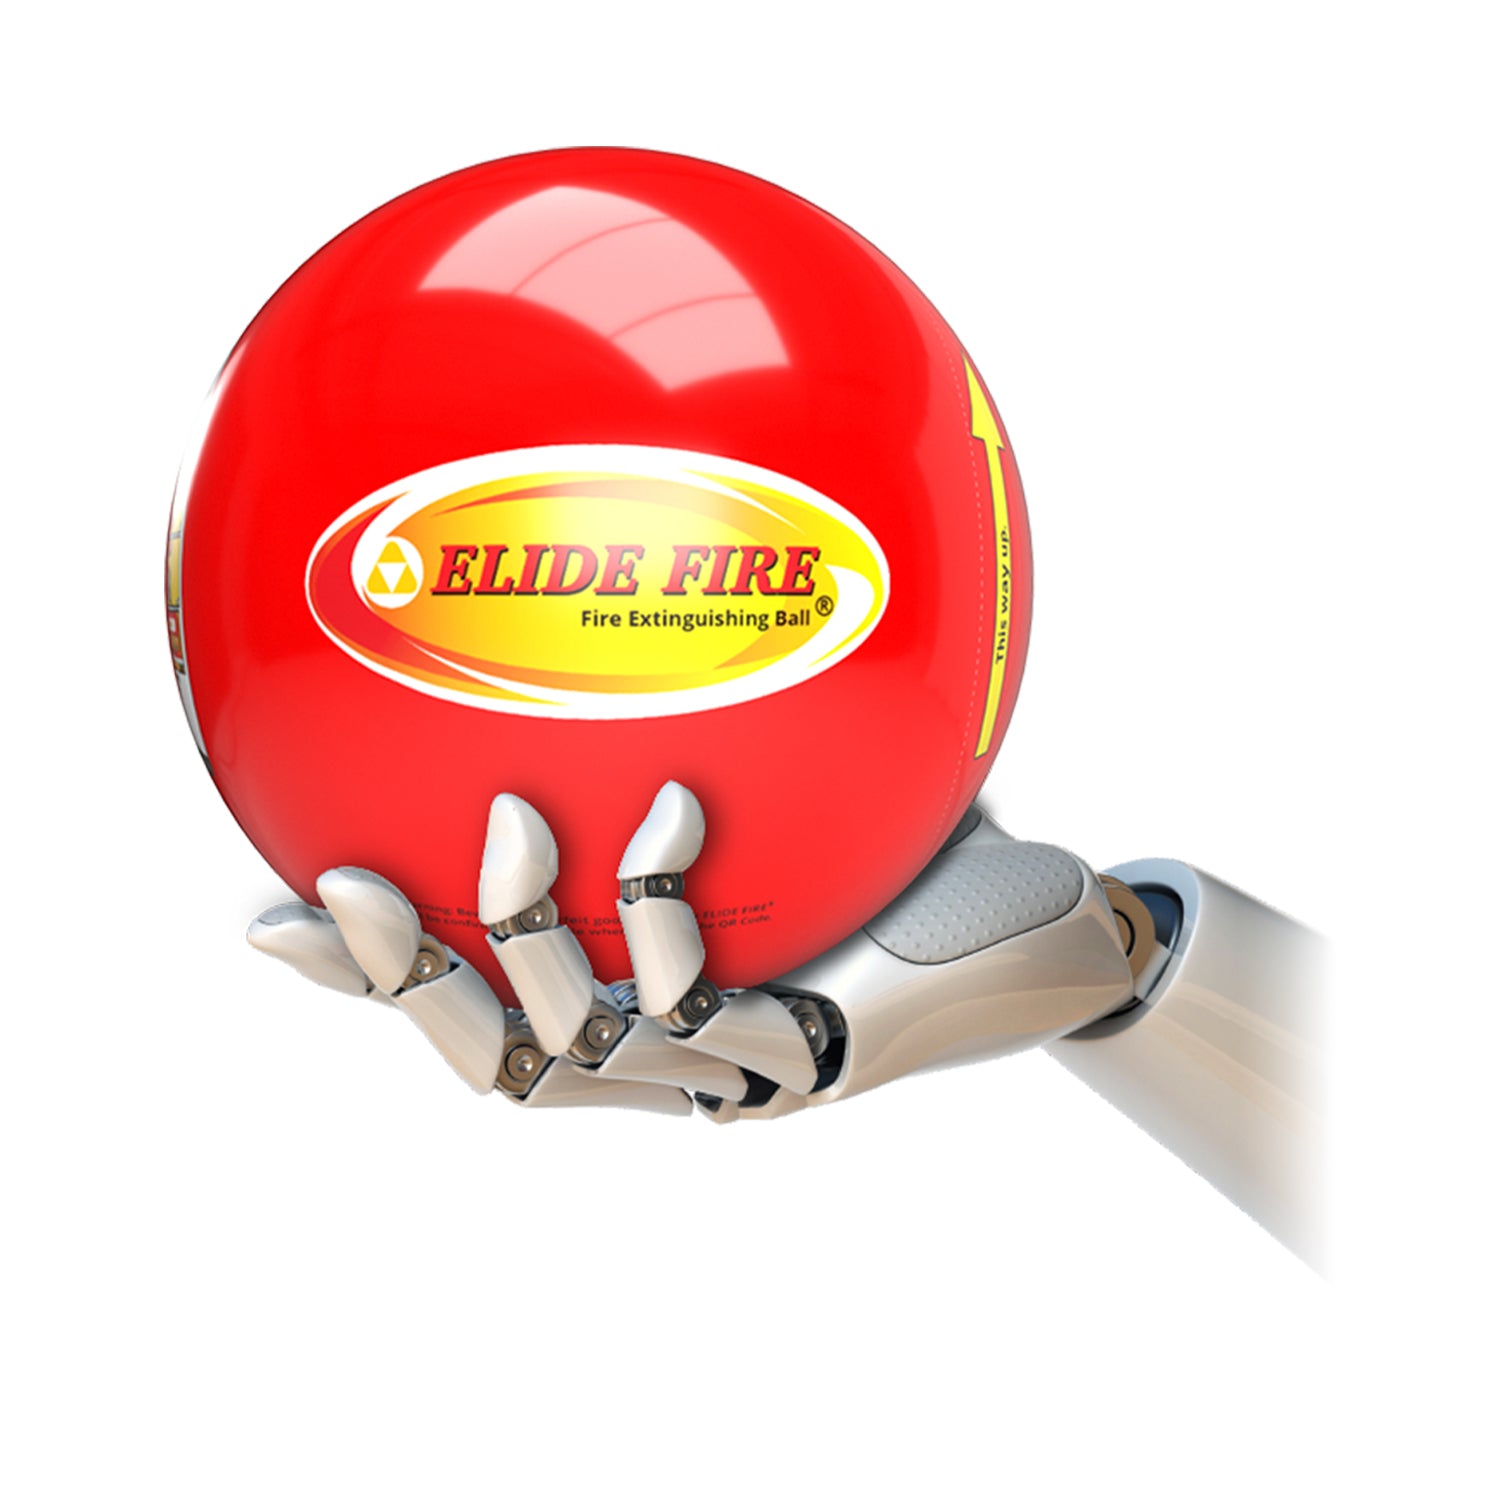 Boule extincteur anti-feu d'Elide Fire - Grow Barato